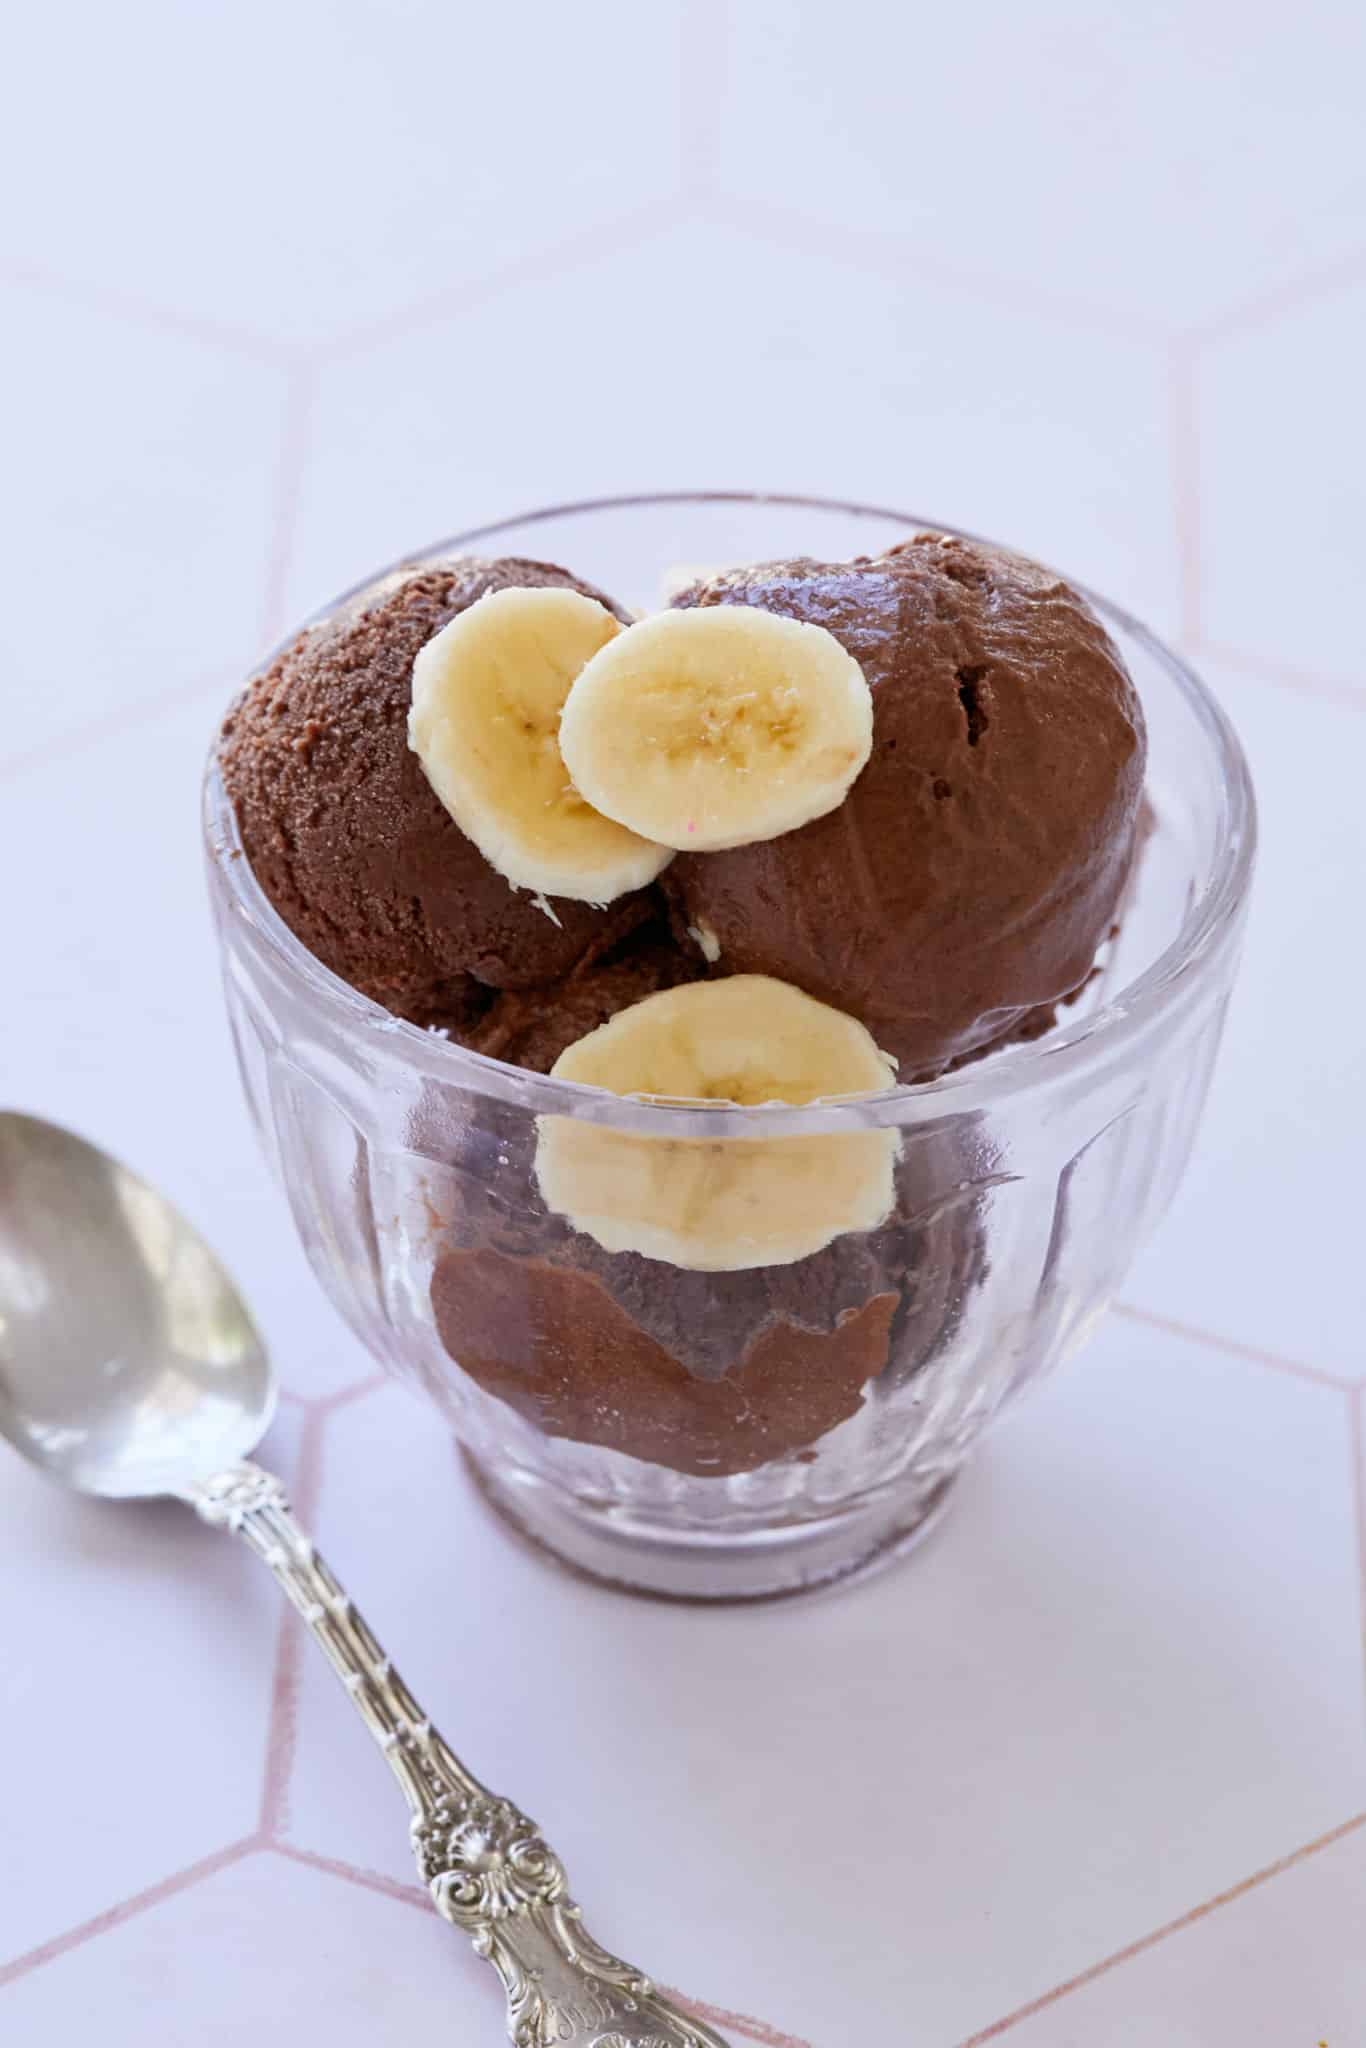 https://www.biggerbolderbaking.com/wp-content/uploads/2022/06/Bana-Date-Choco-Breakfast-Ice-Cream2-scaled.jpg